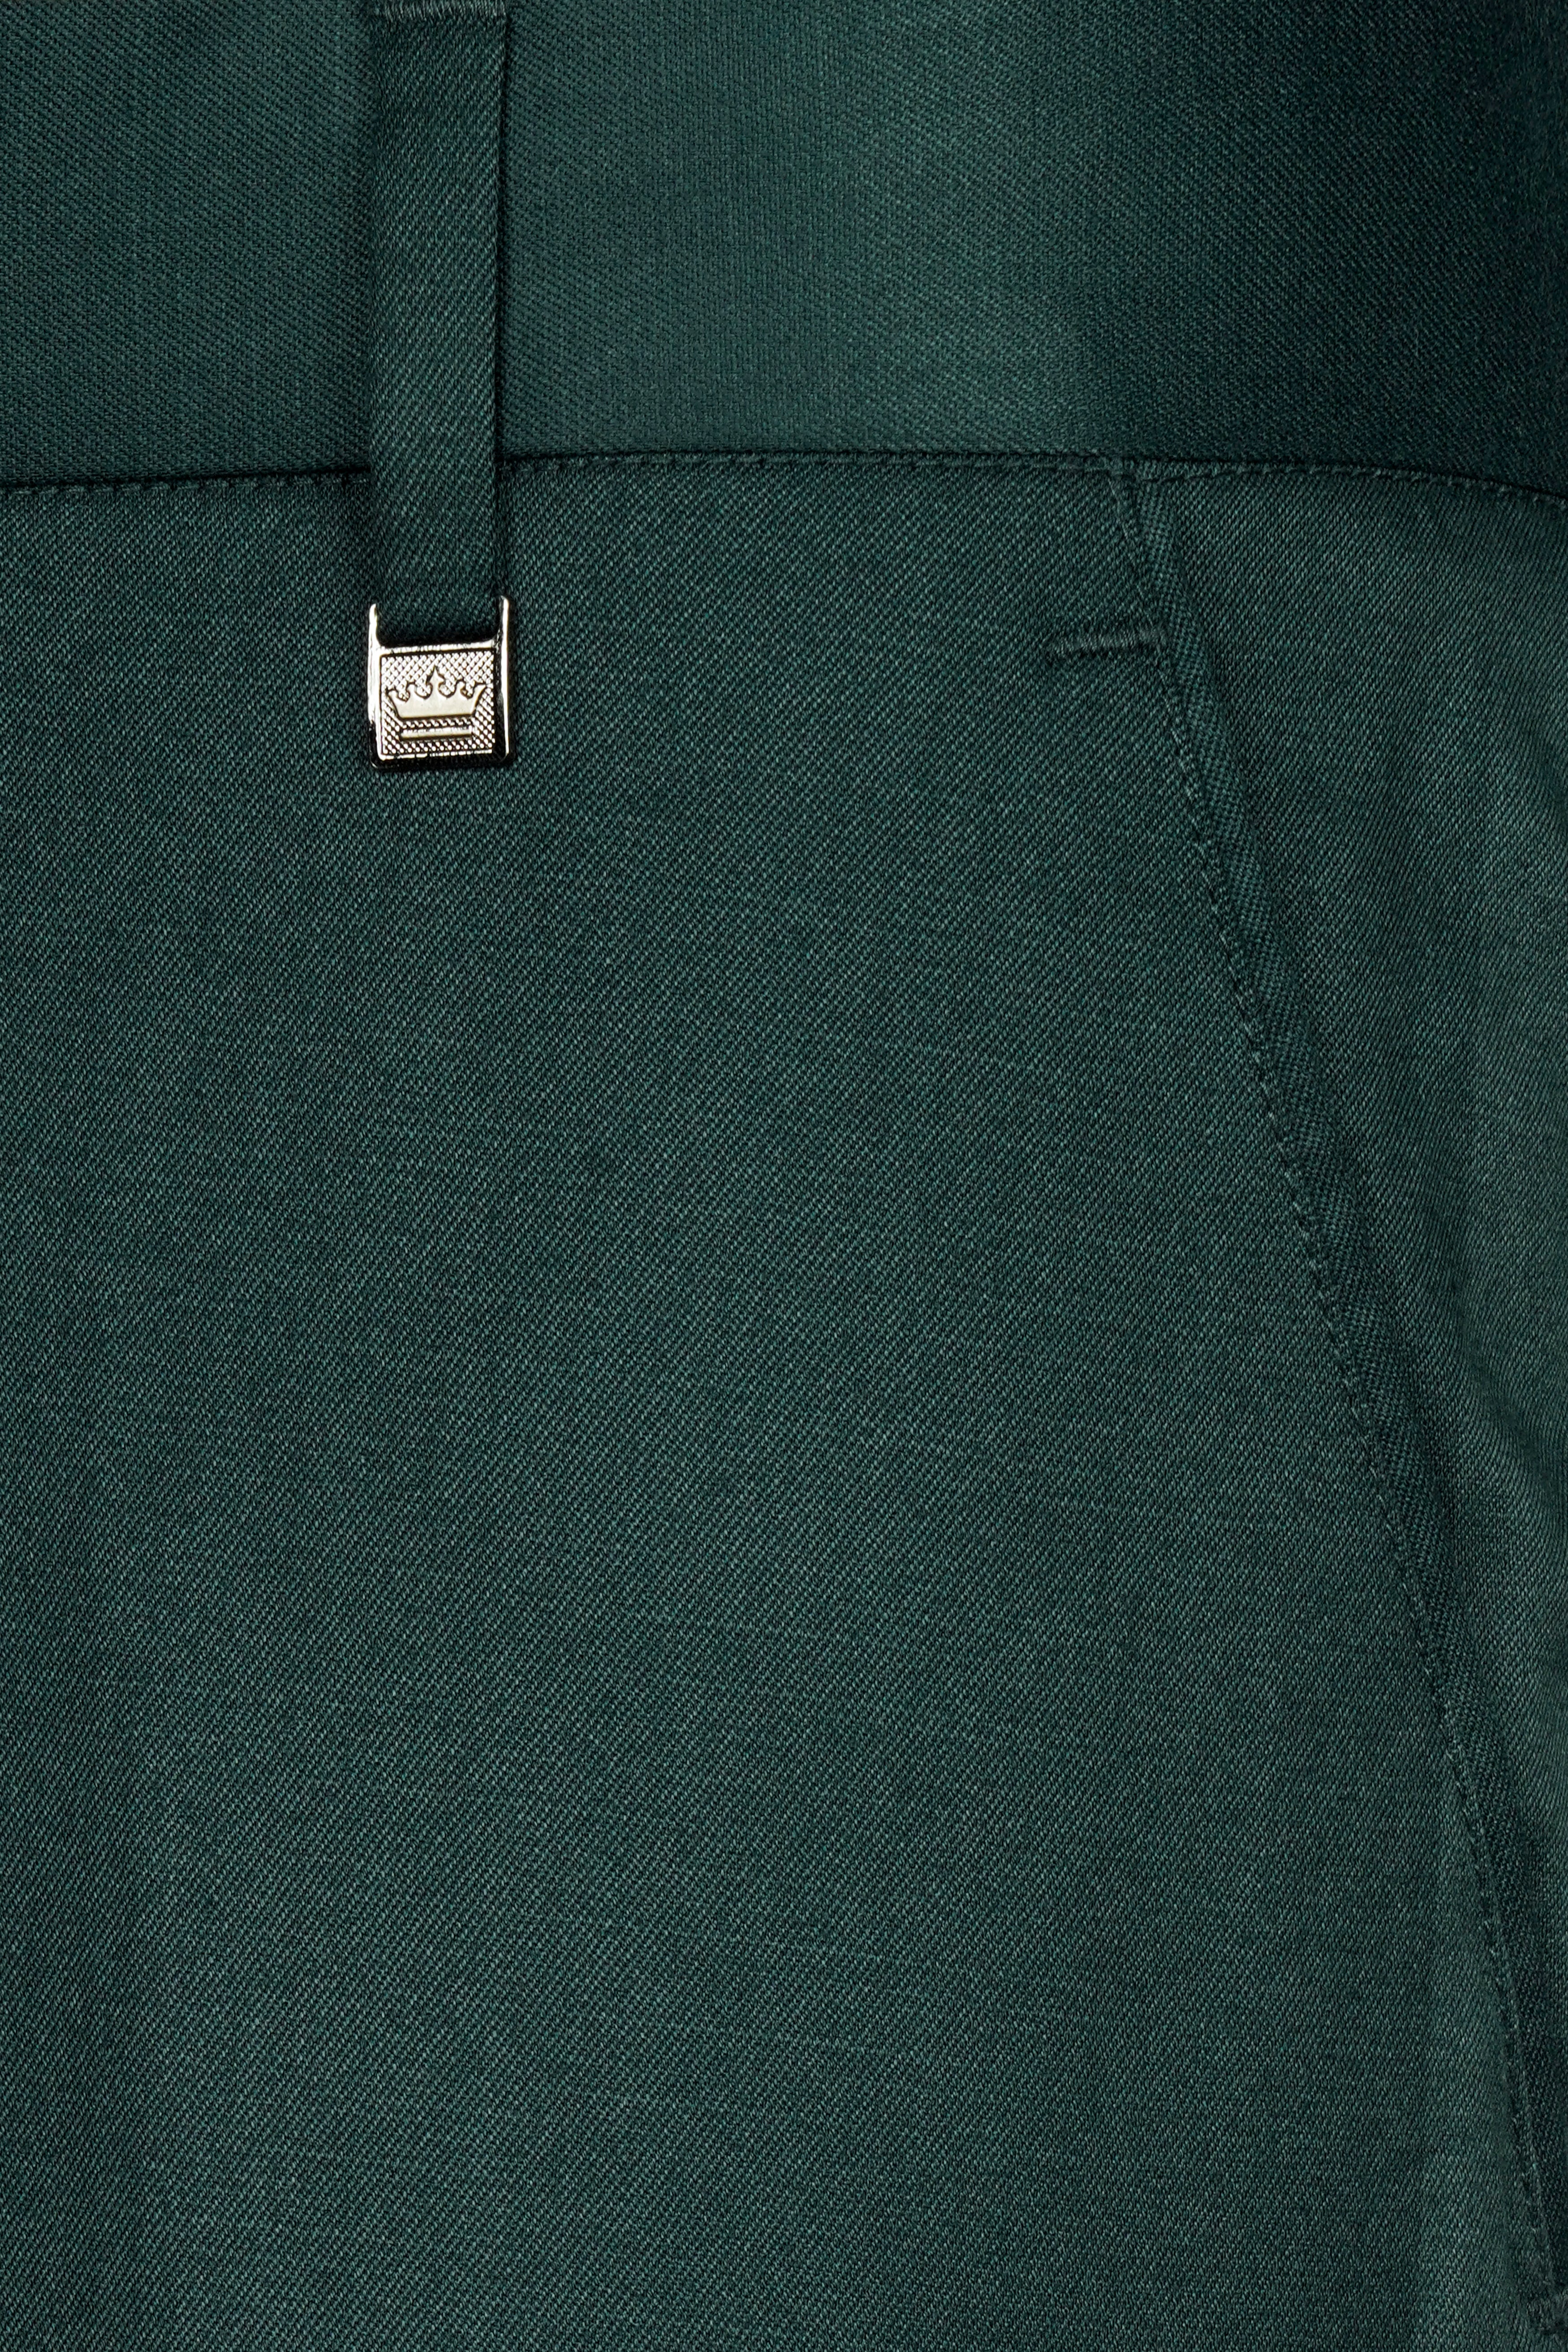 Gable Green Wool Rich Pant T3051-28, T3051-30, T3051-32, T3051-34, T3051-36, T3051-38, T3051-40, T3051-42, T3051-44